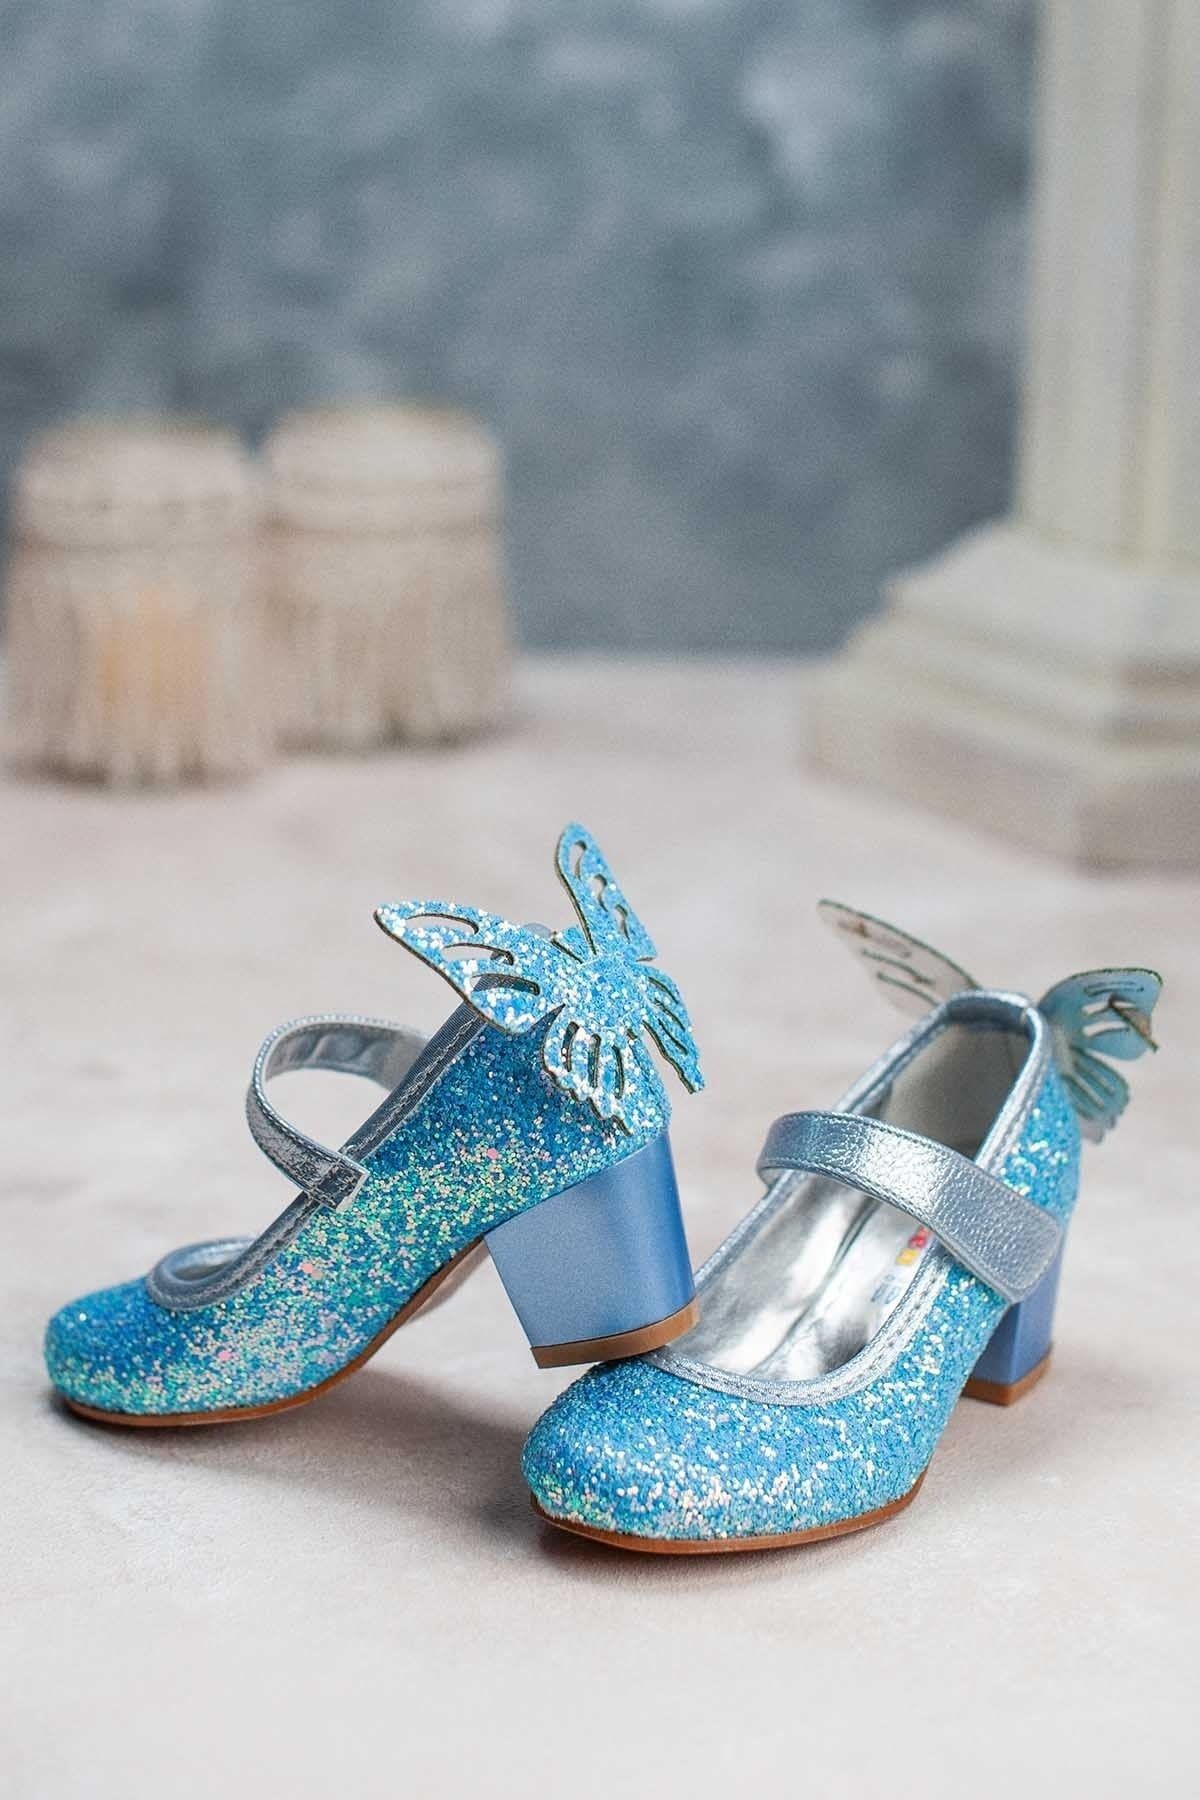 MİNİ WOMEN Kız Çocuk Topuklu Ayakkabı Kelebek Detaylı Buz Mavisi